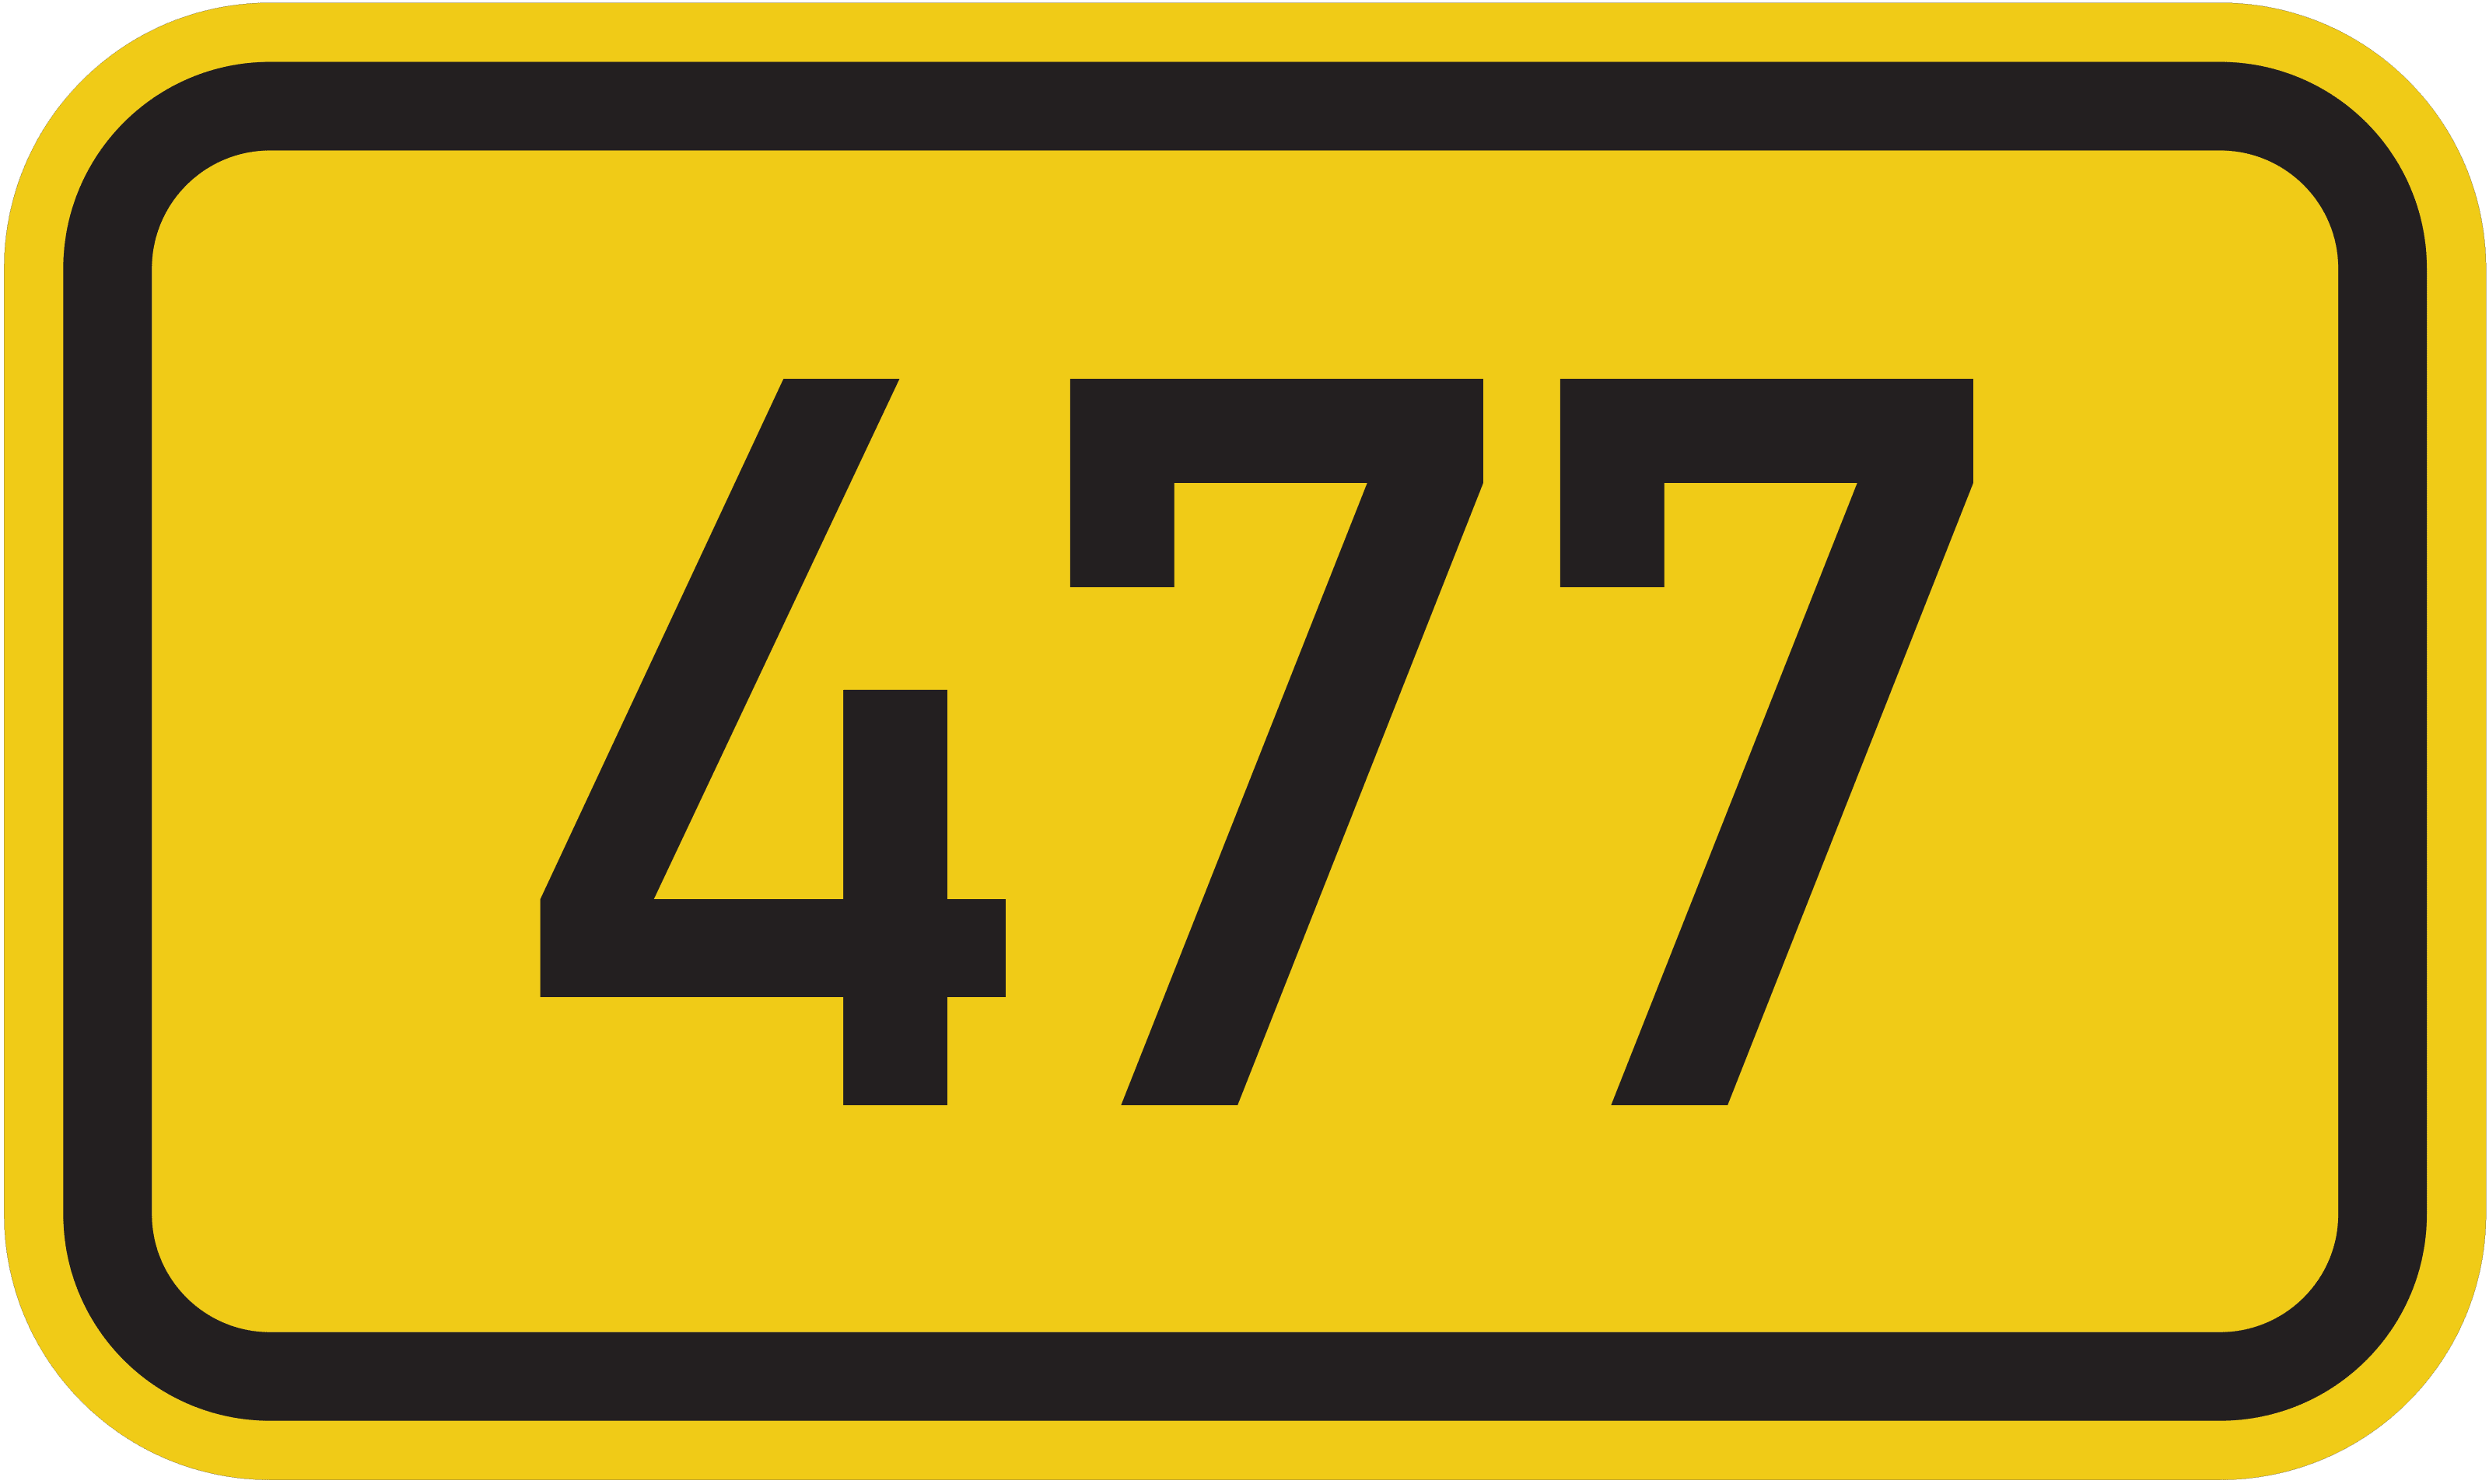 Bundesstraße B 477